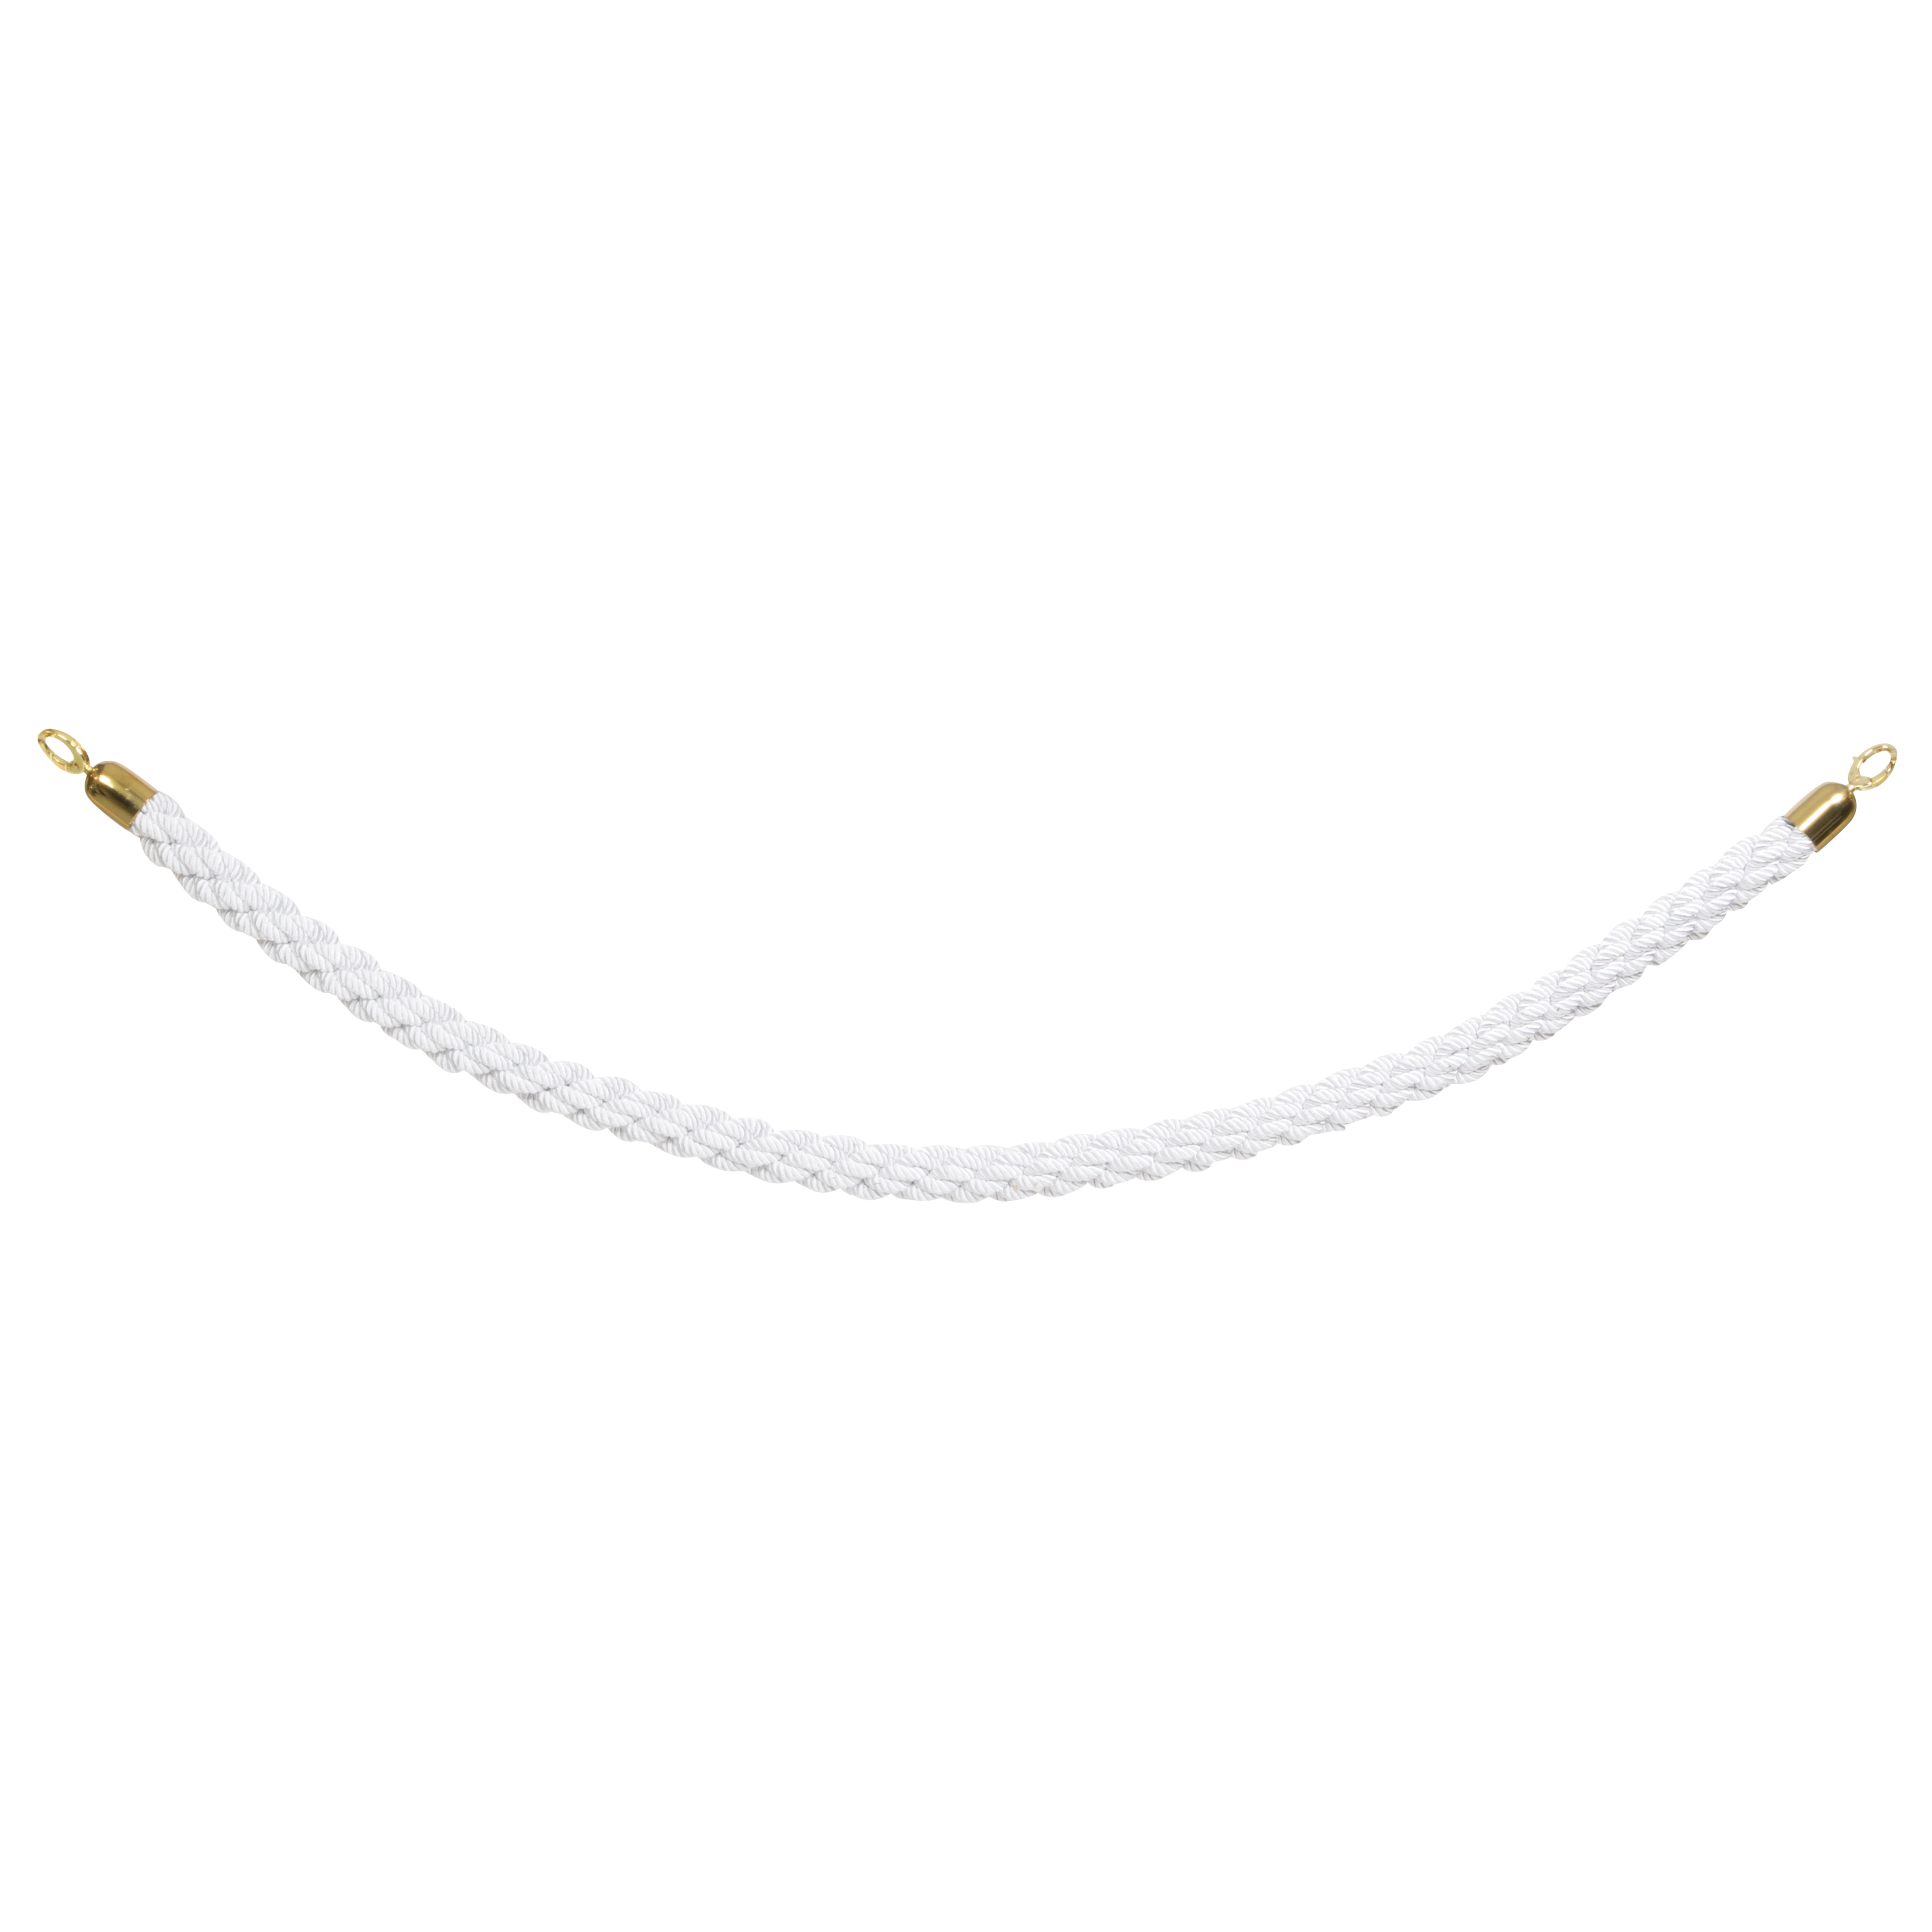 Corde tressée blanche pour poteau classique embouts dorés - 150 cm